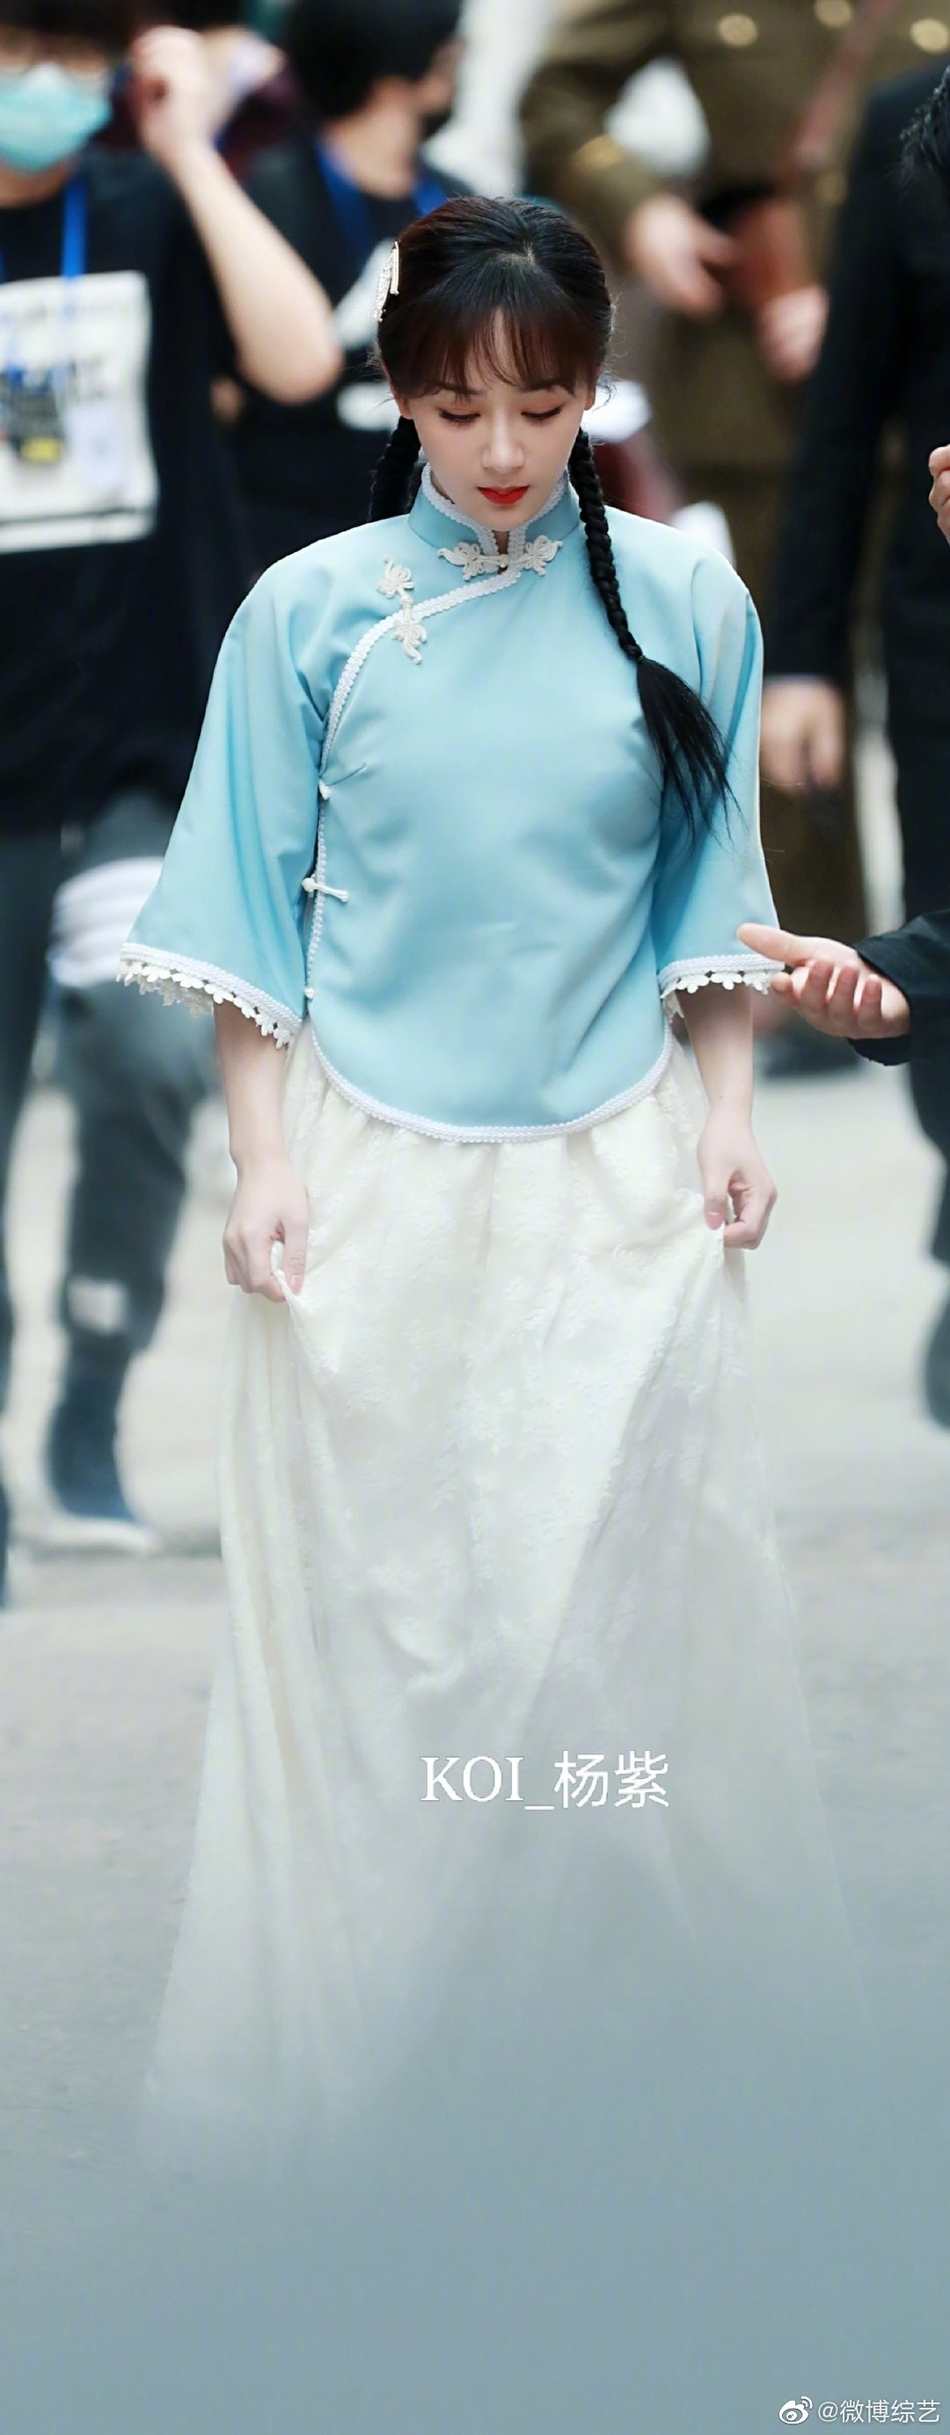 杨紫民国风造型少女感满满 走路微提裙摆优雅有气质